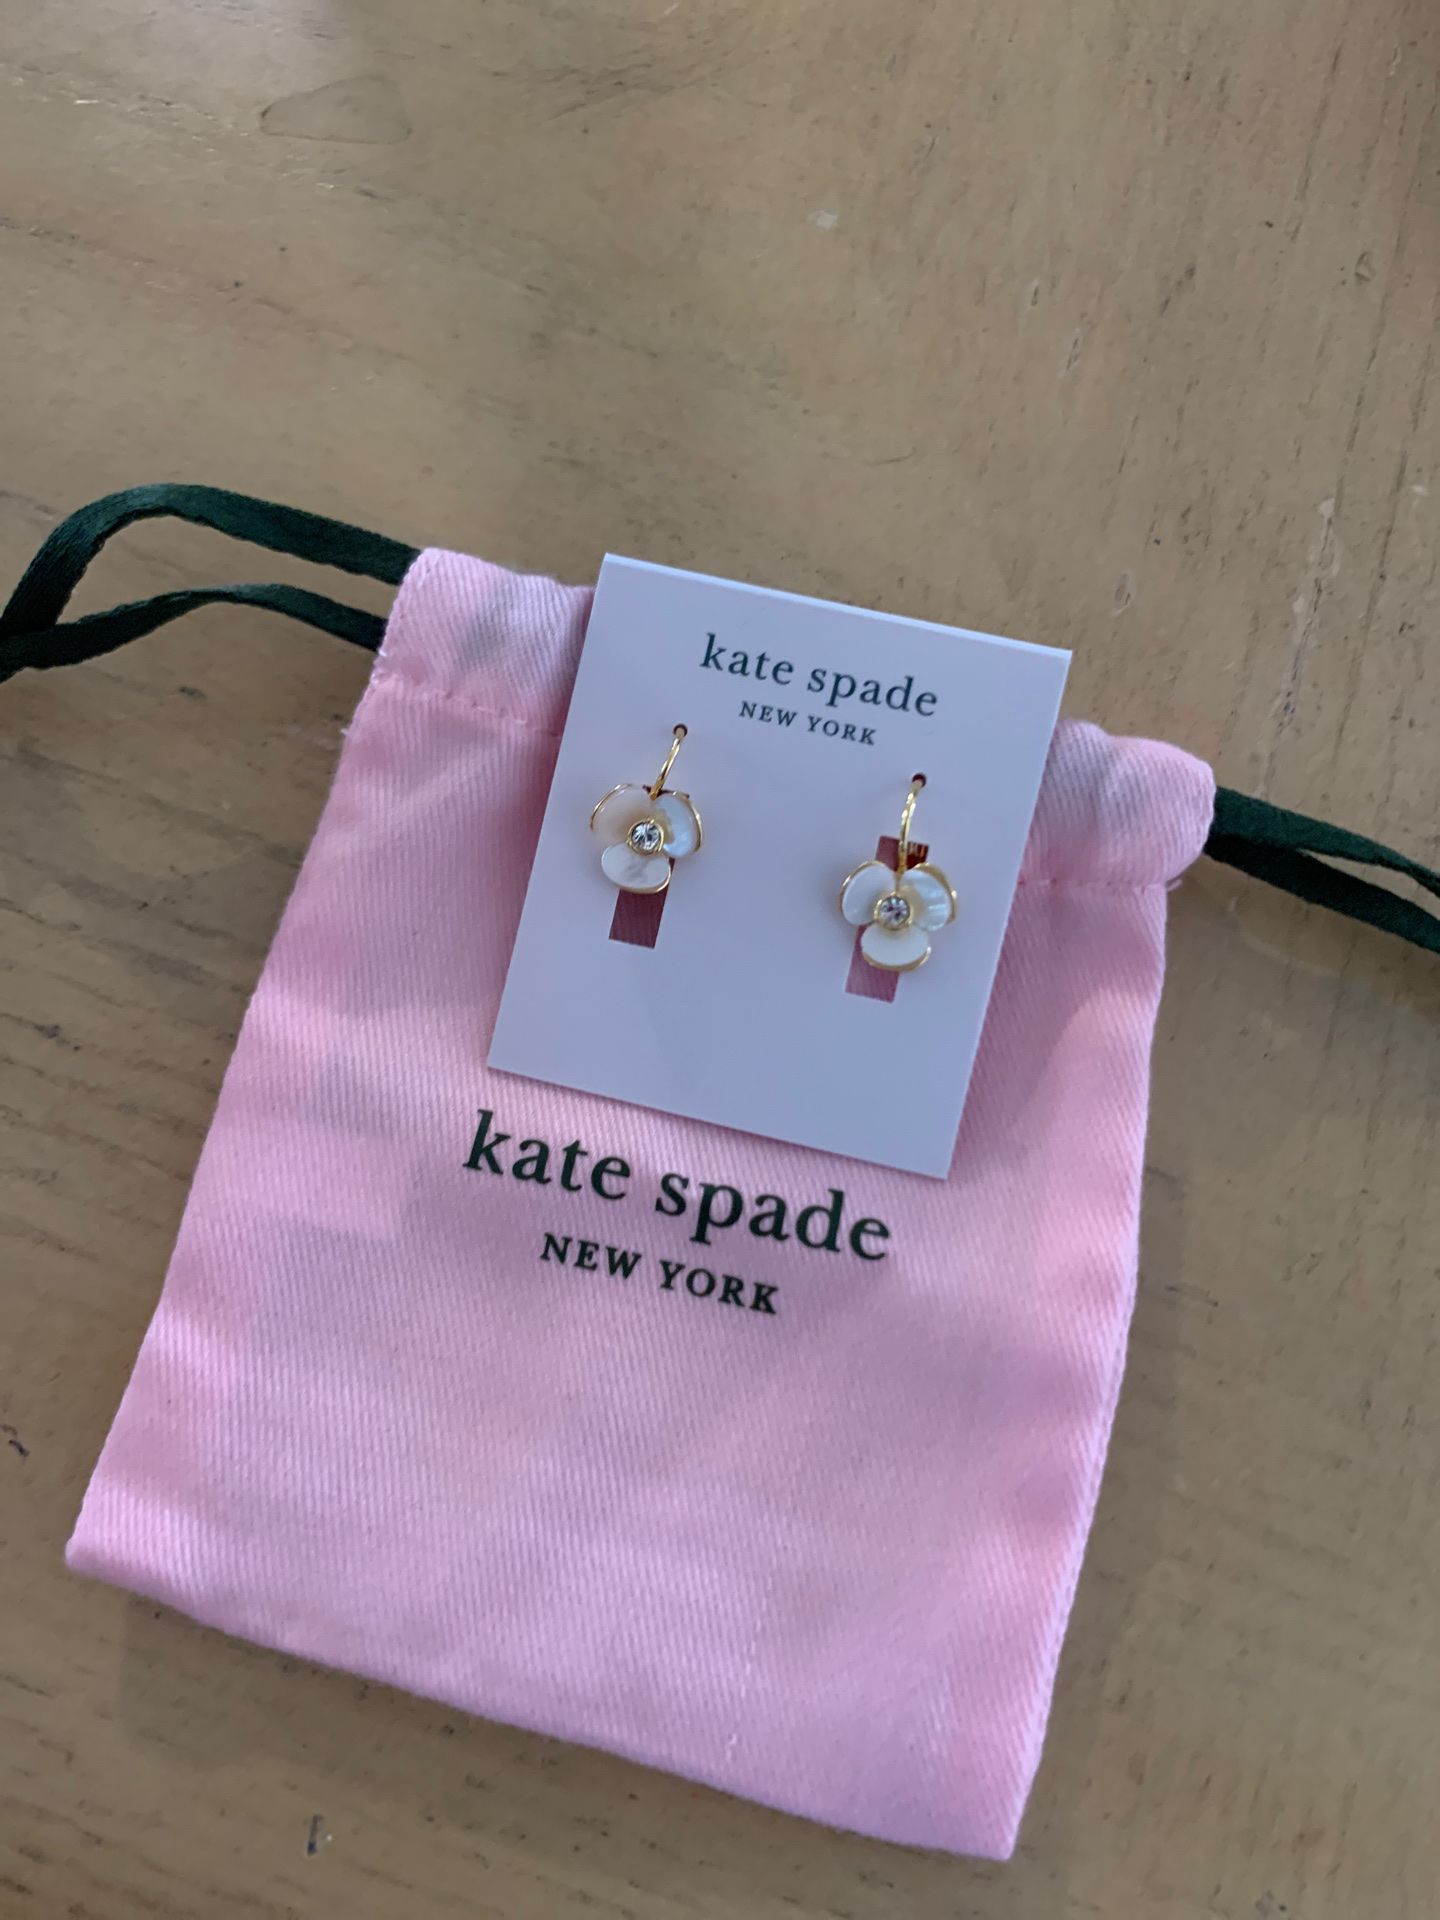 Kate Spade Earrings